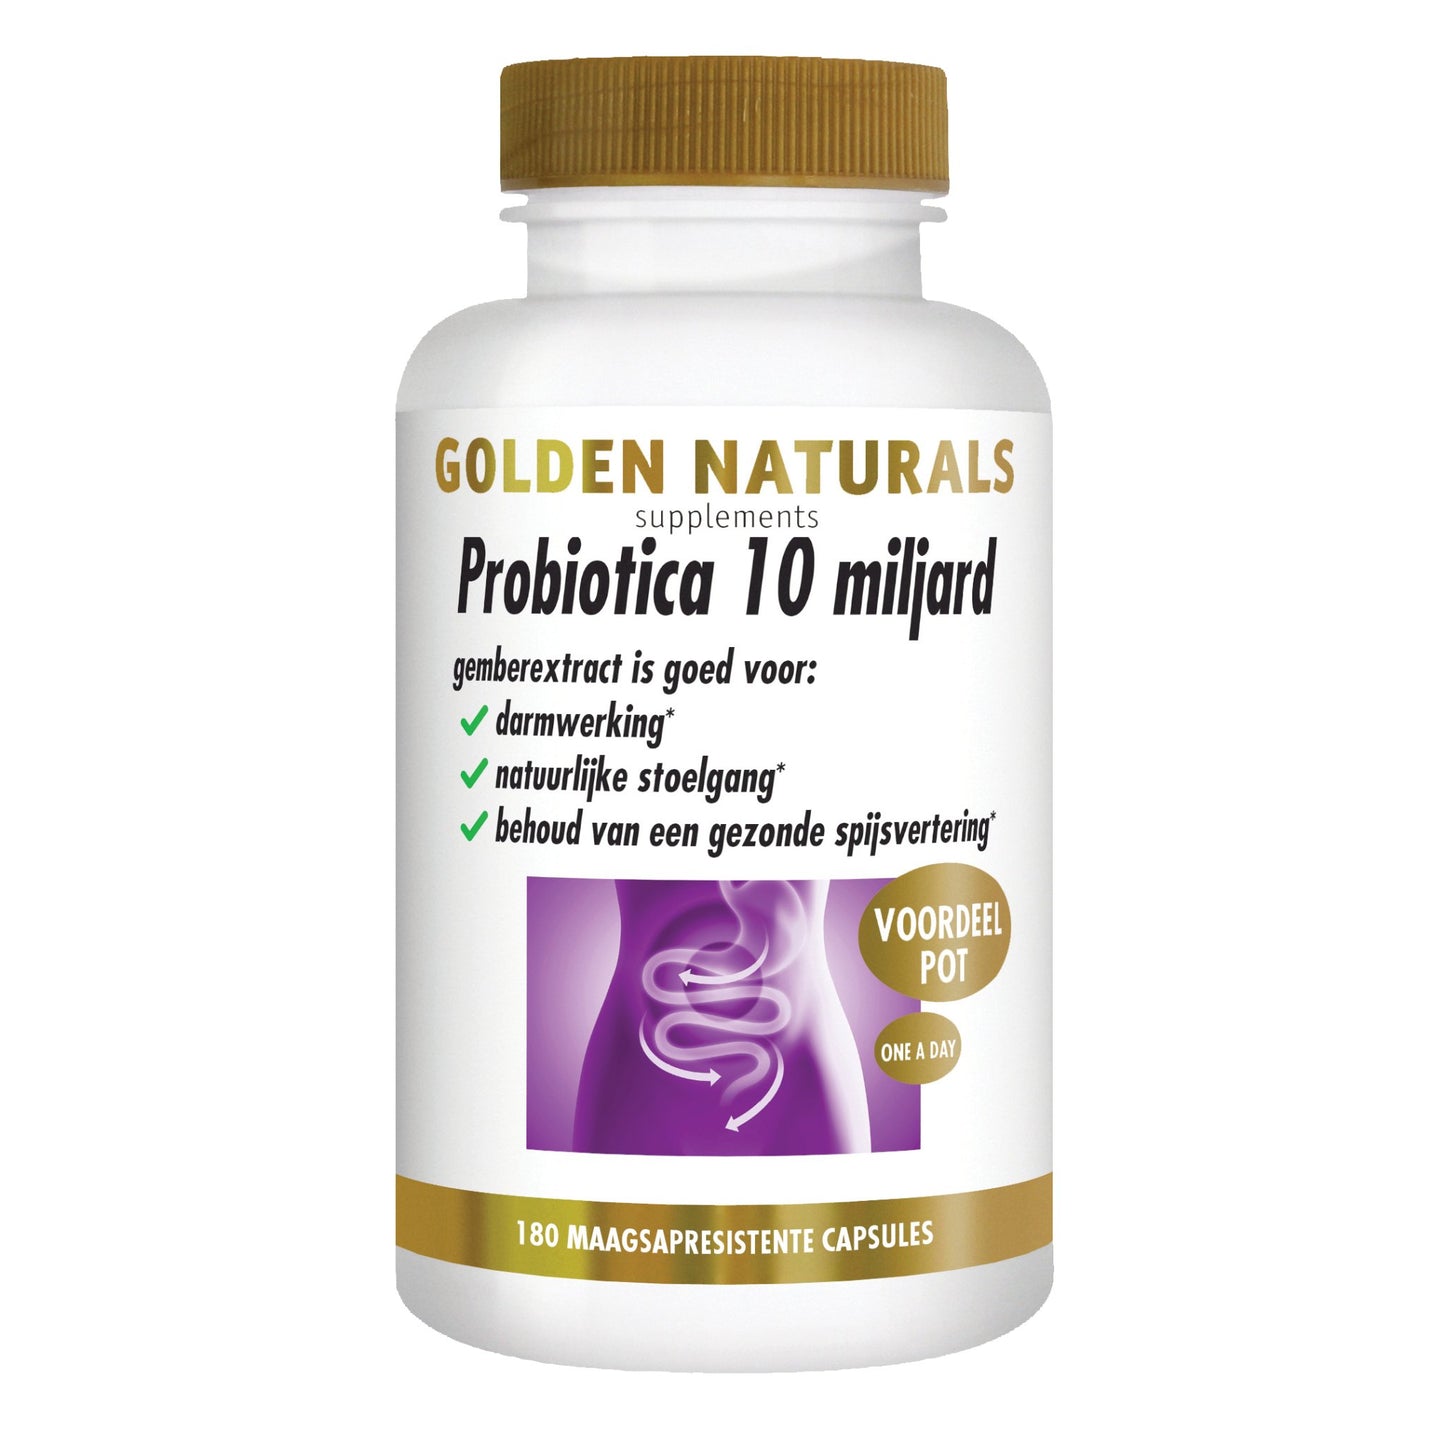 Probiotica 10 miljard - 180 - veganistische maagsapresistente capsules Supplement Golden Naturals   